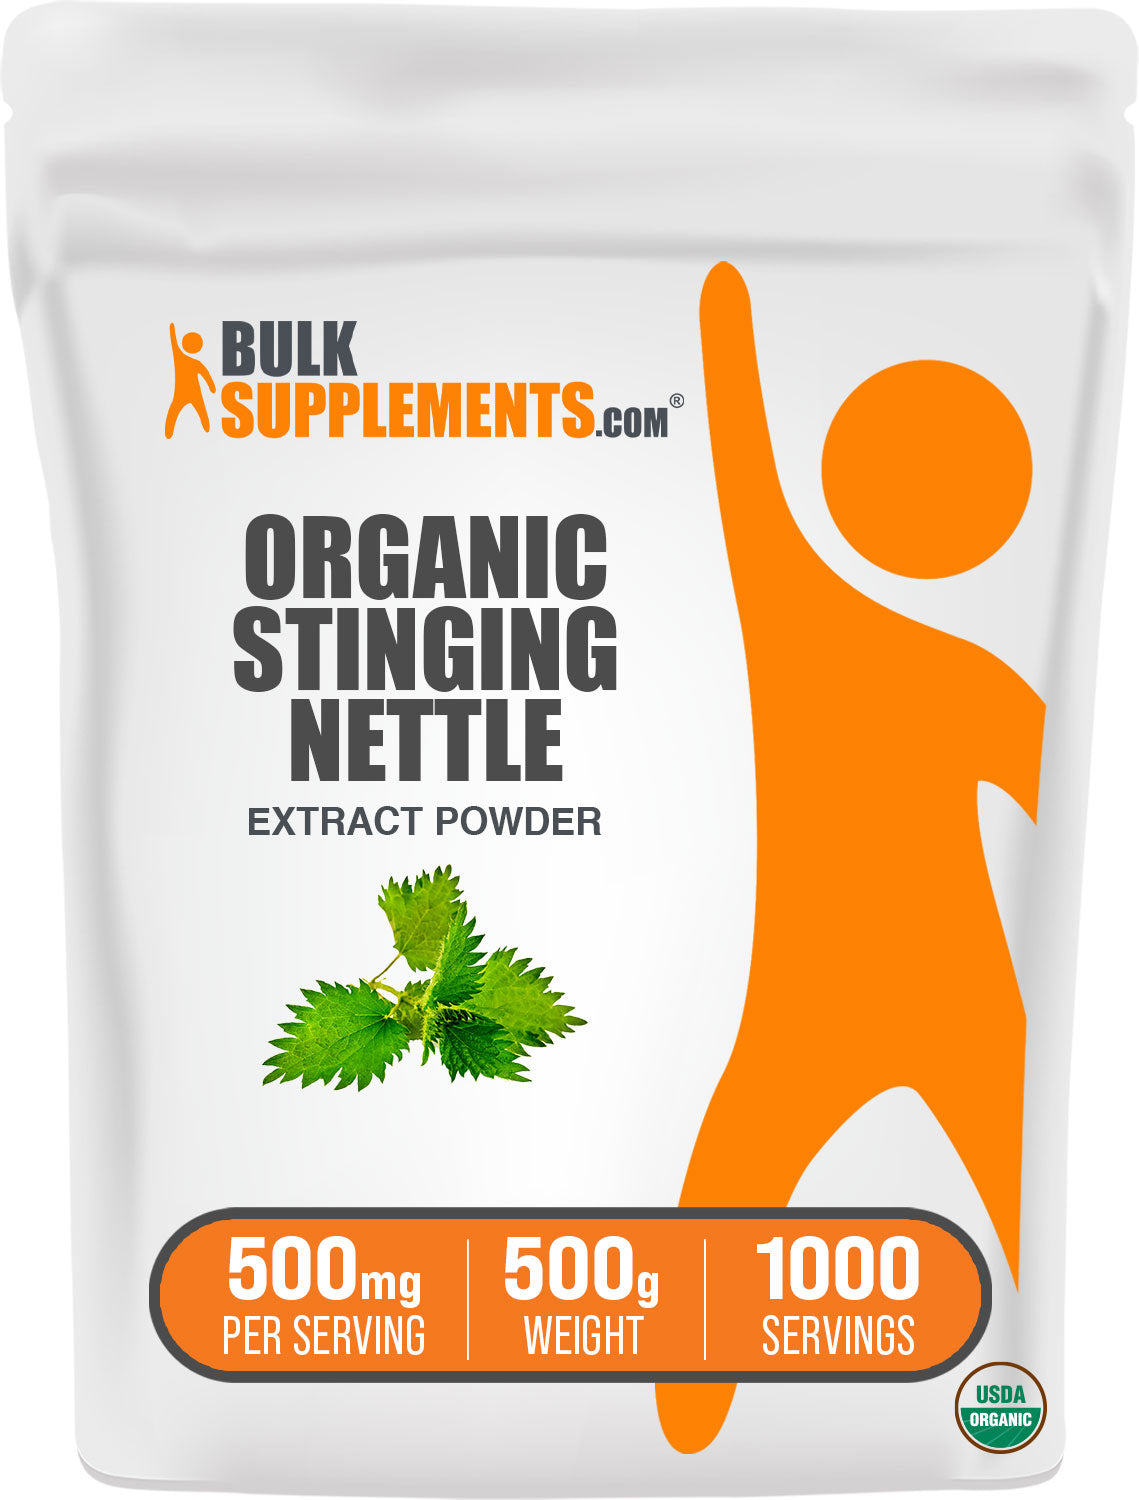 Organic Stinging Nettle Extract Powder 500g bag image